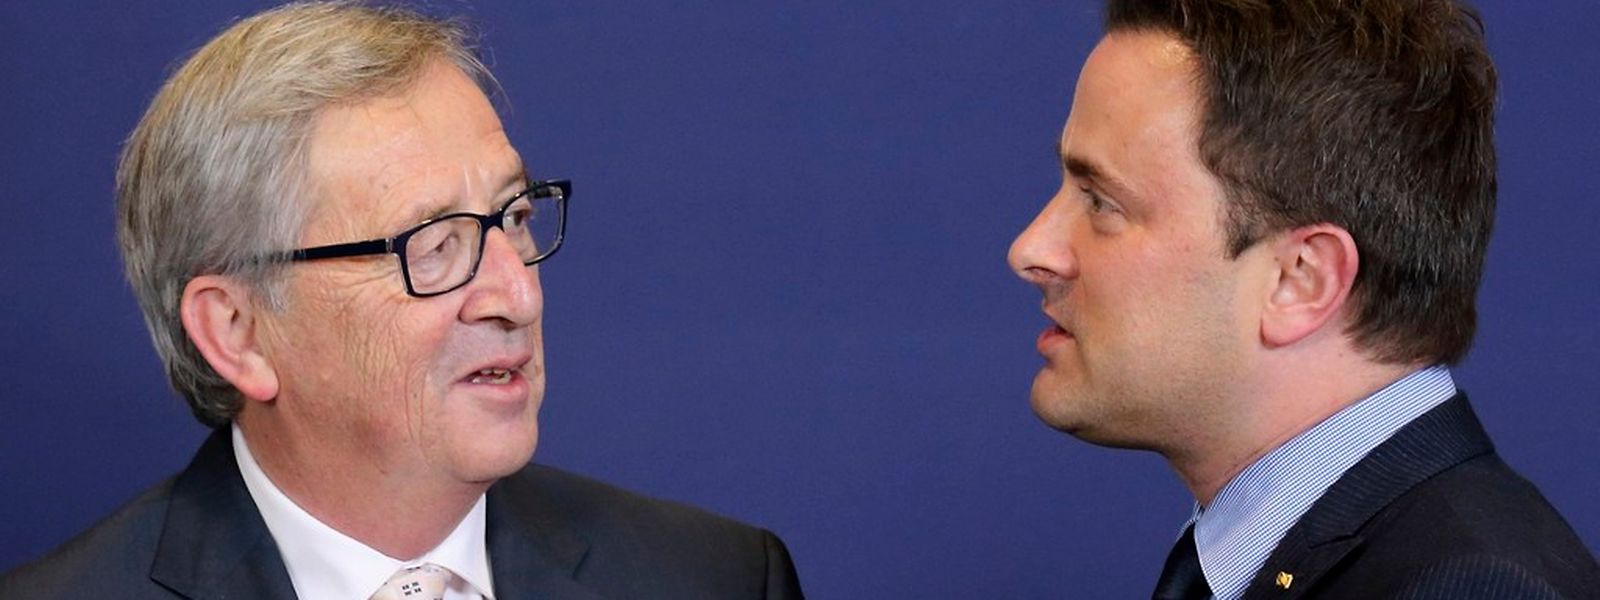 Ob die Rulings Thema dieses Gesprächs zwischen Xavier Bettel und Jean-Claude Juncker waren, ist nicht bekannt.